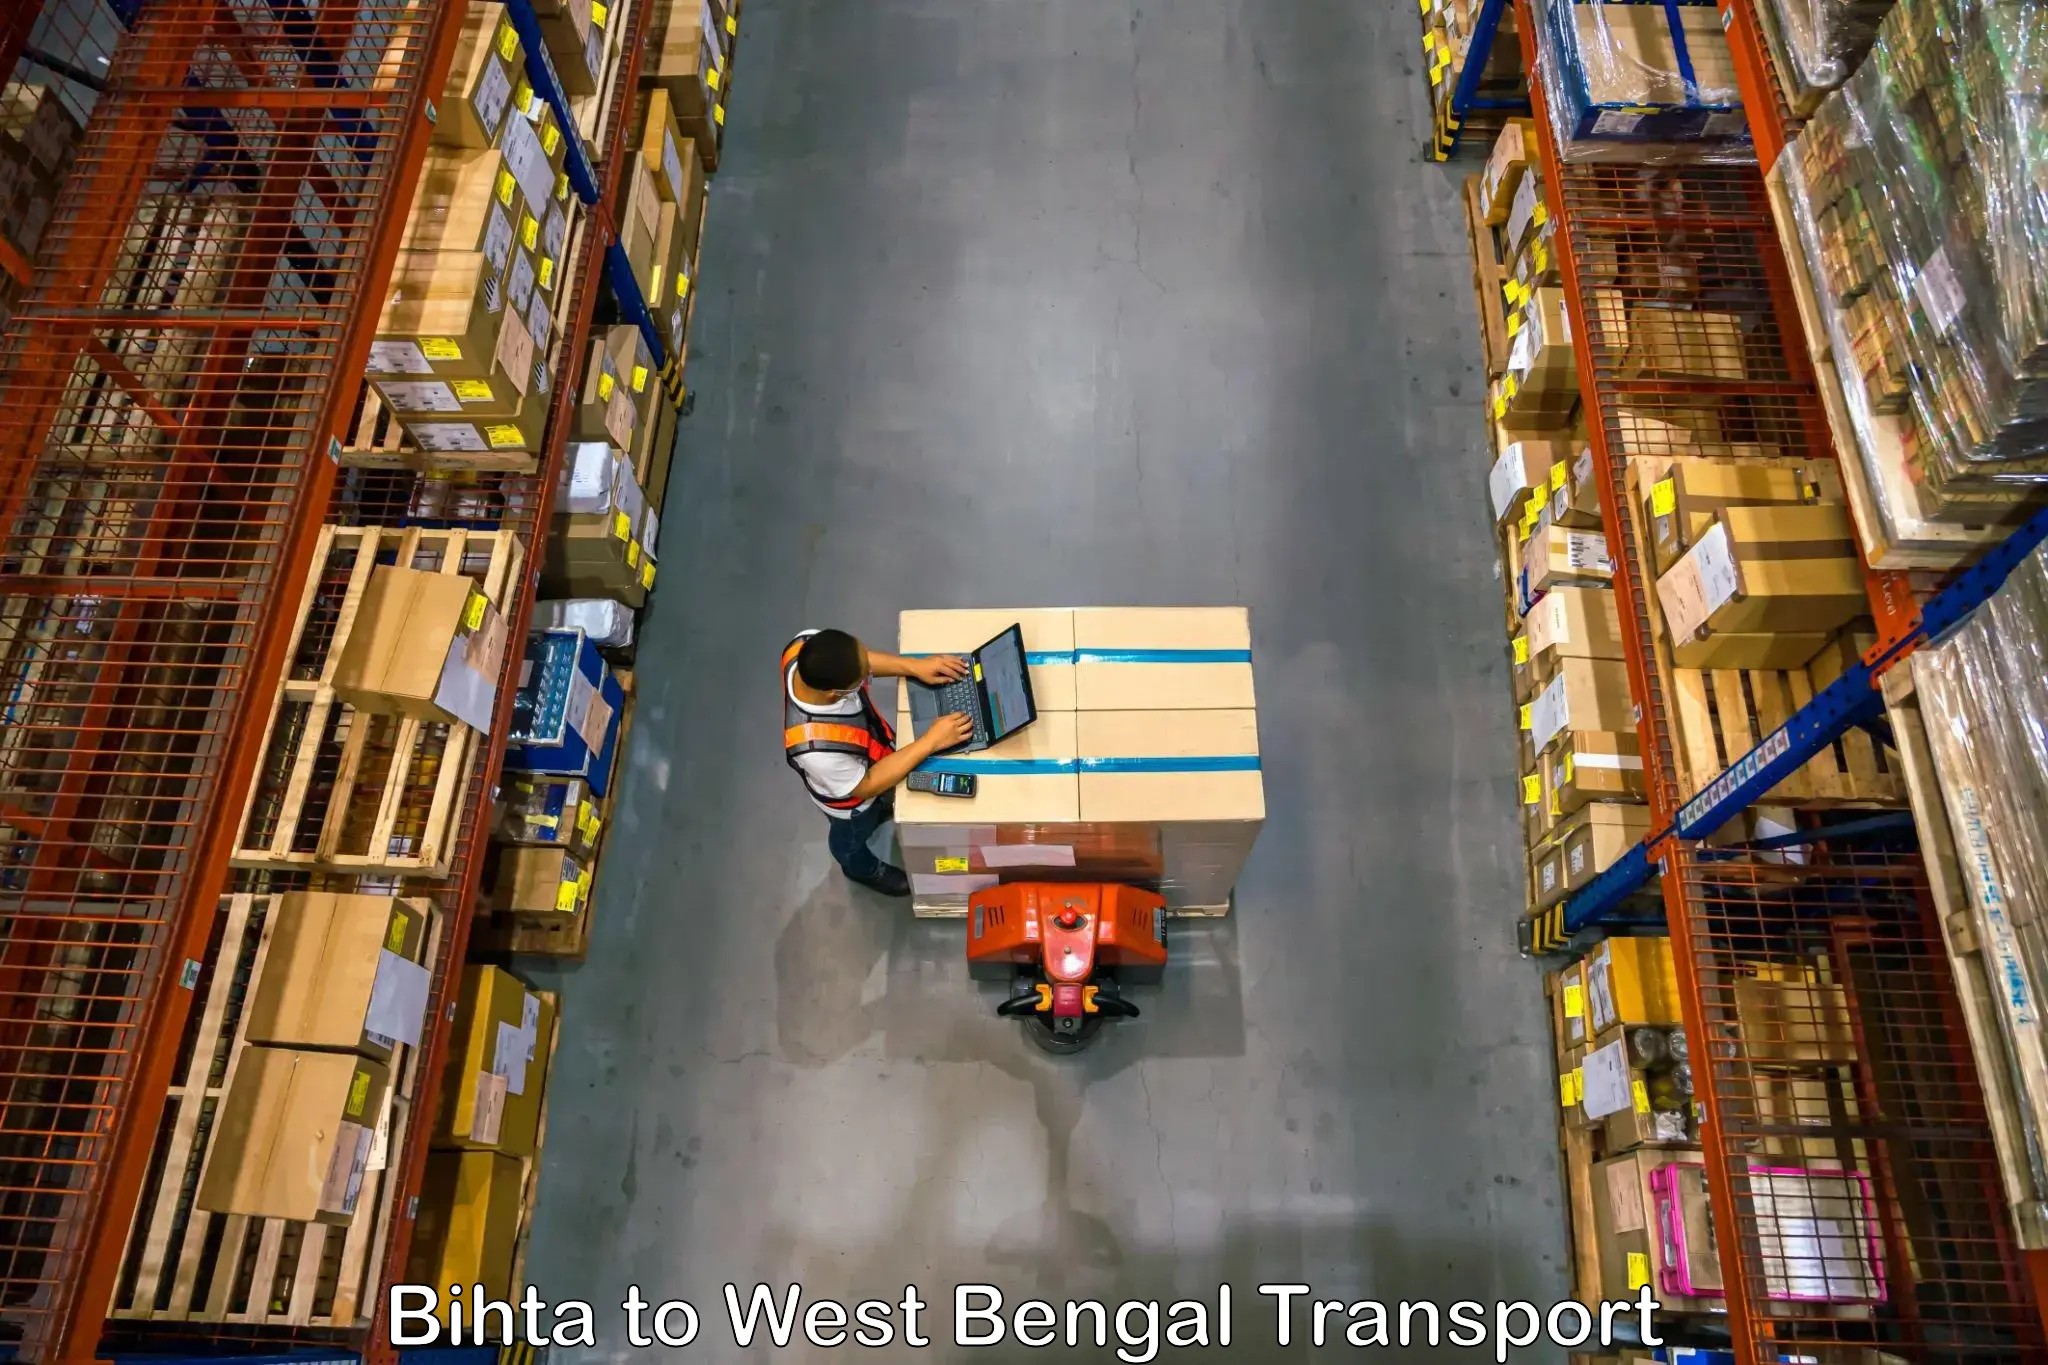 Bike shipping service Bihta to Binnaguri